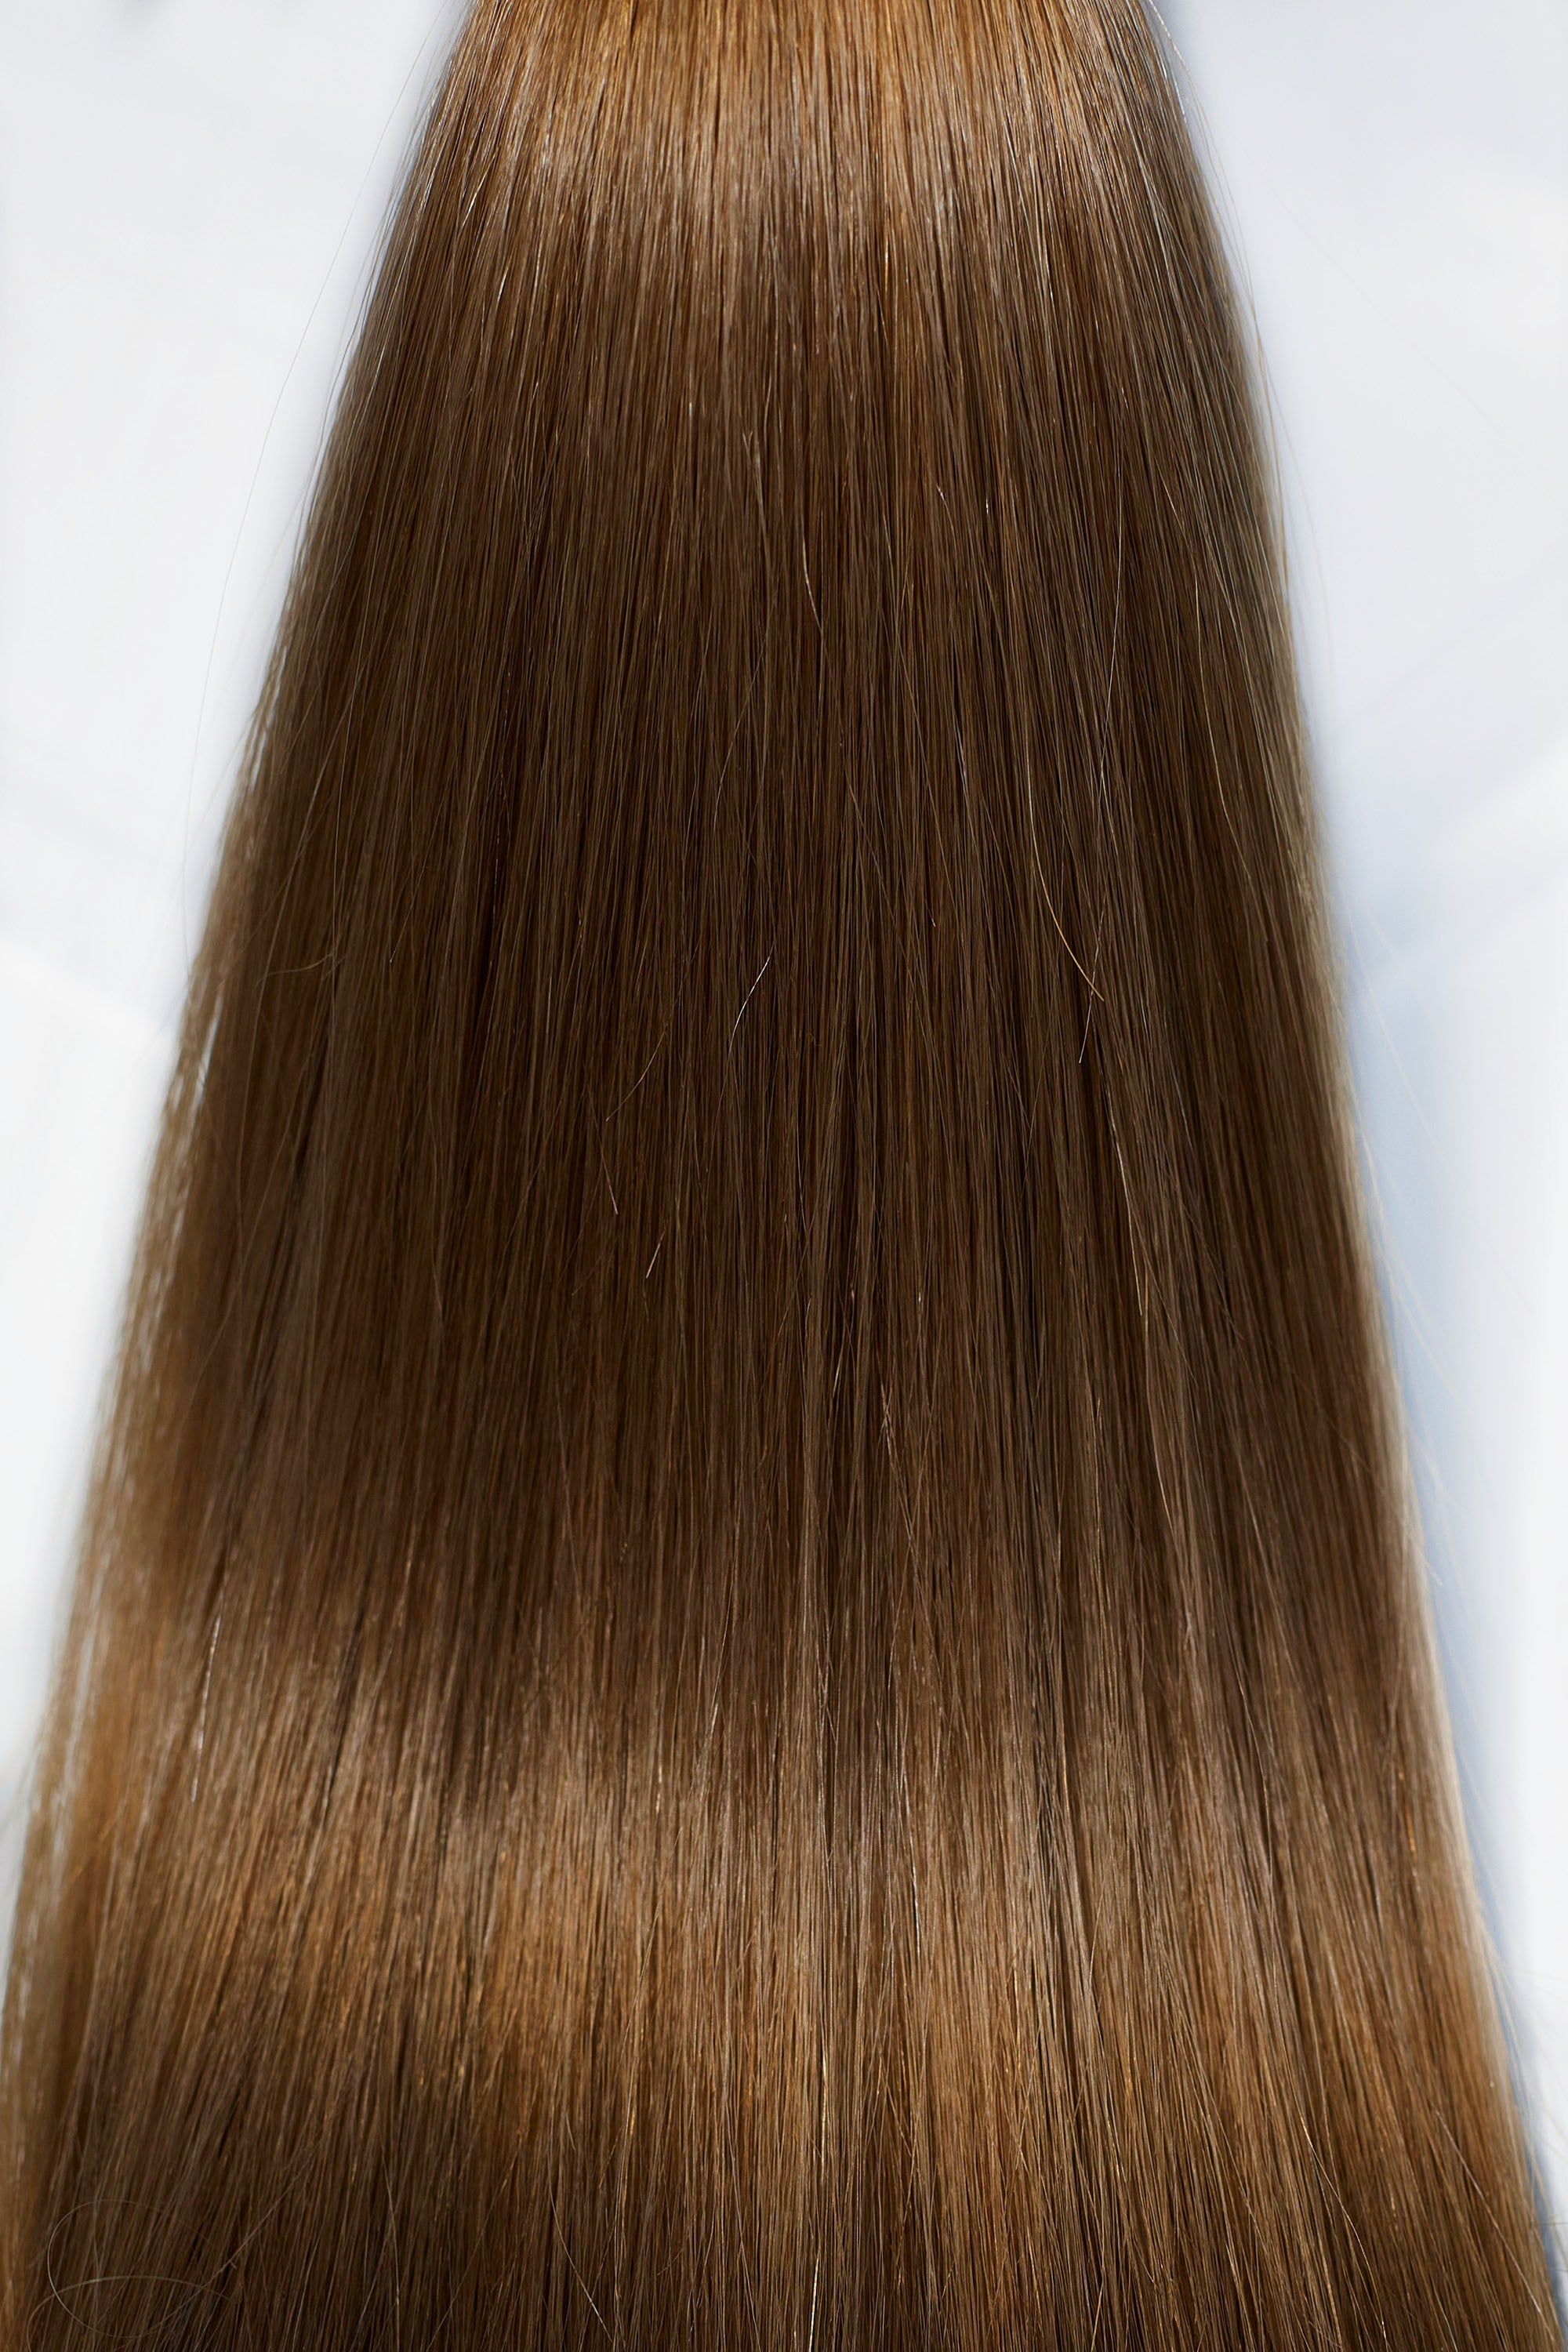 Behair professional Bulk hair "Premium" 28" (70cm) Natural Straight Chestnut #6 - 25g hair extensions